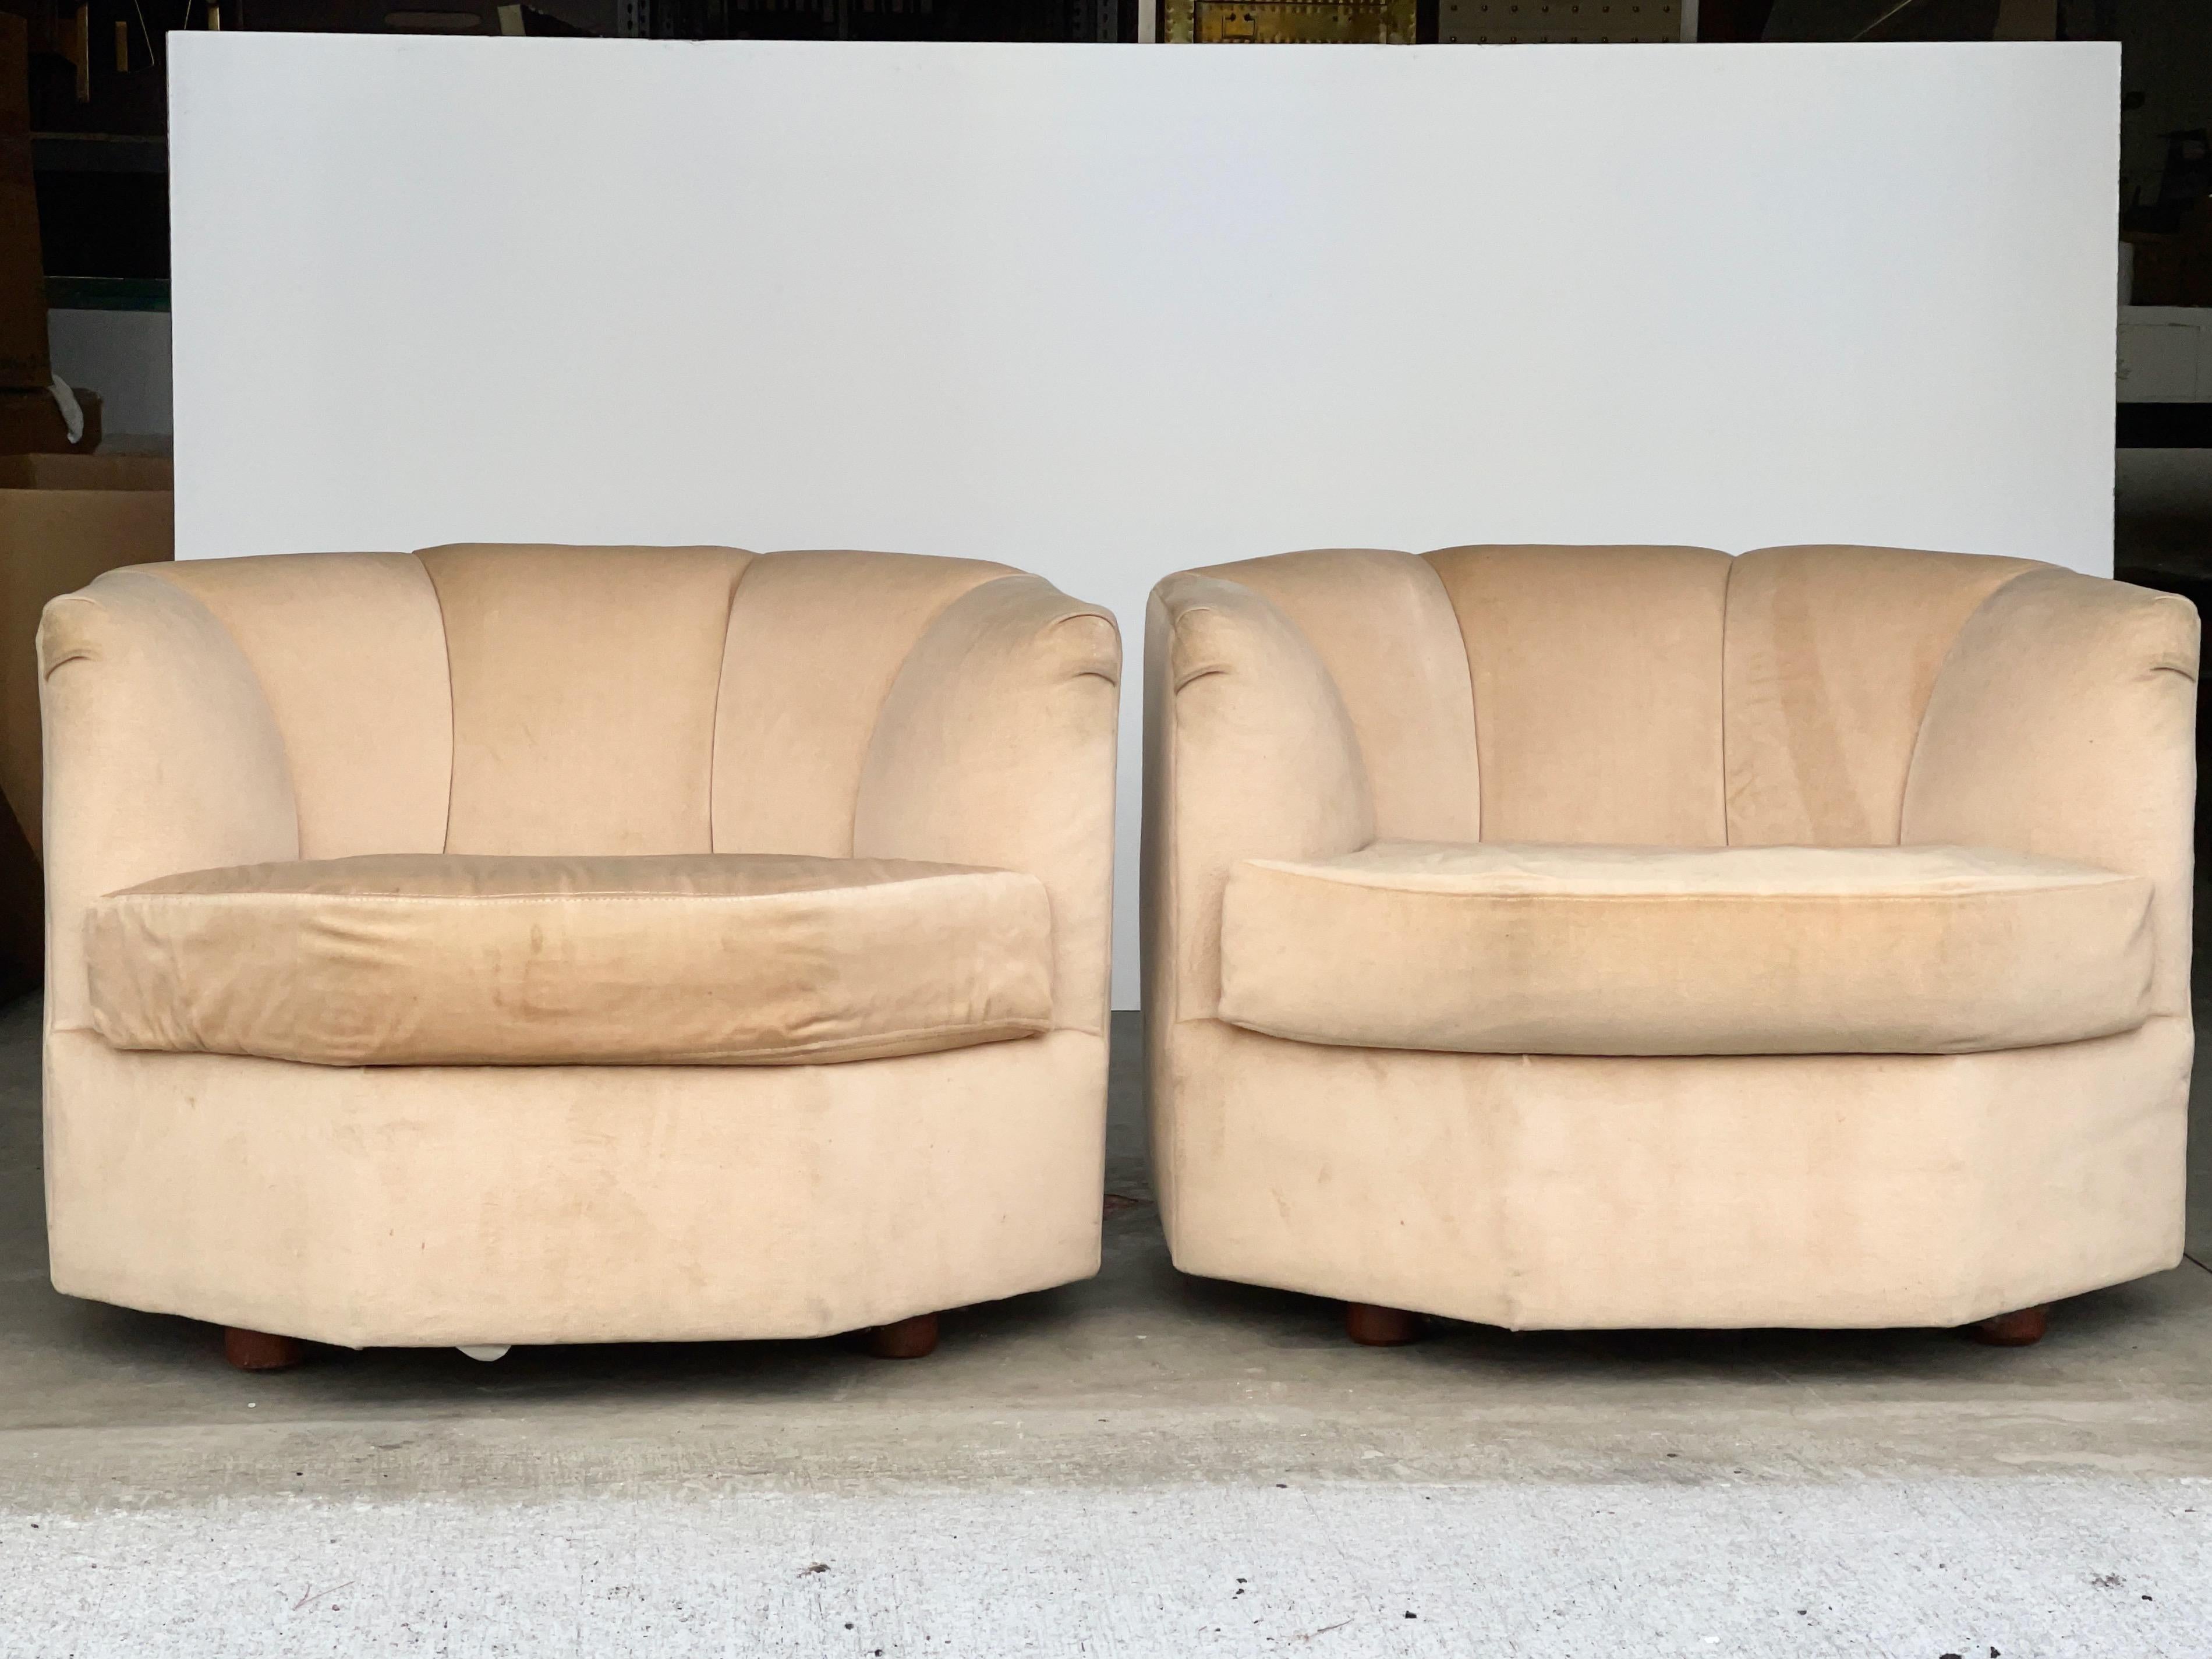 Paire de chaises longues de forme octogonale produites en 1979 par Selig Manufacturing pour leur collection de sièges modulaires 